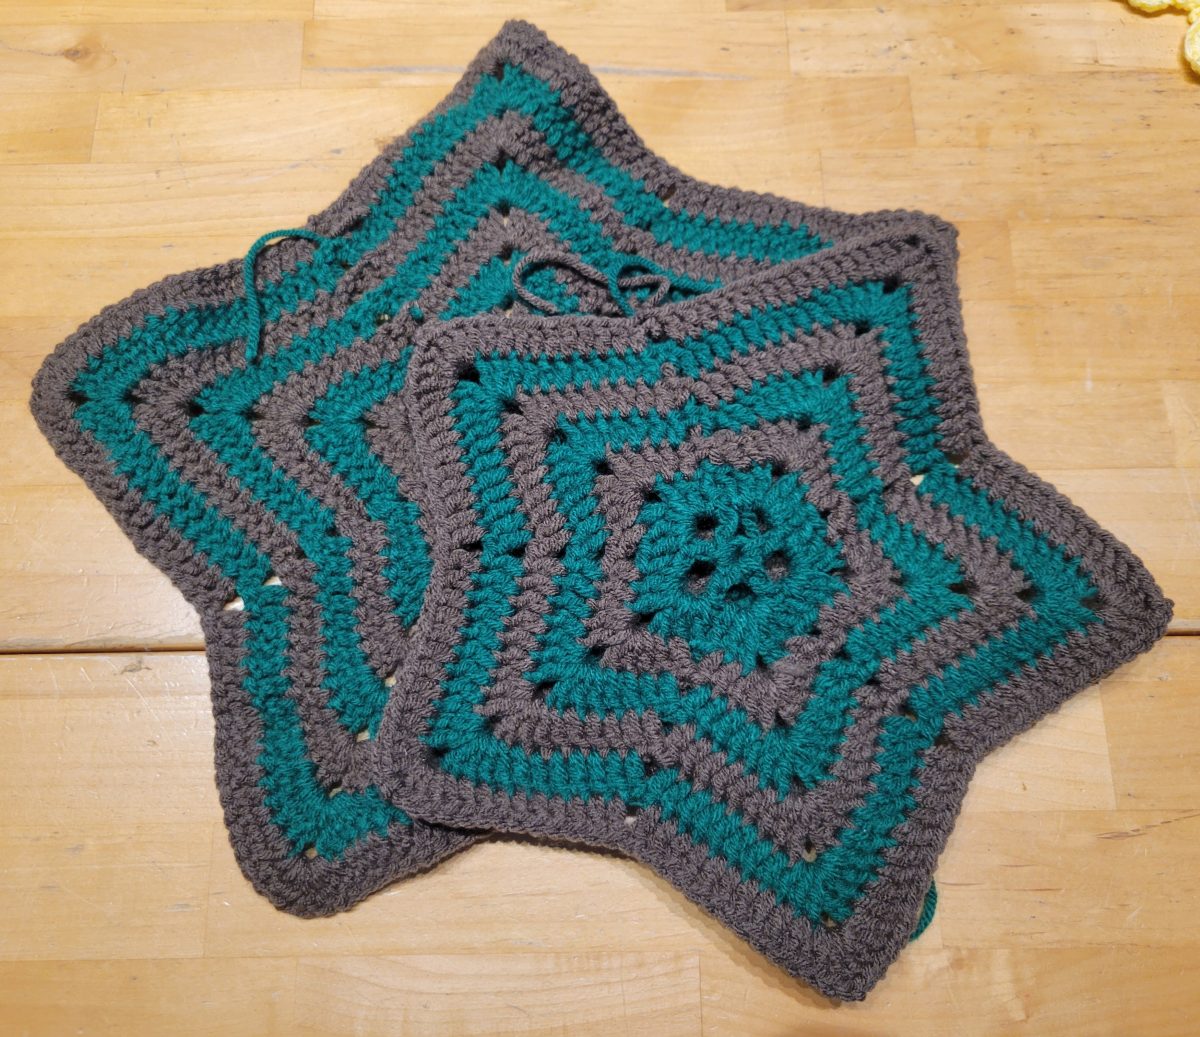 Crochet+away%3A+Not+knitting%2C+not+knotting